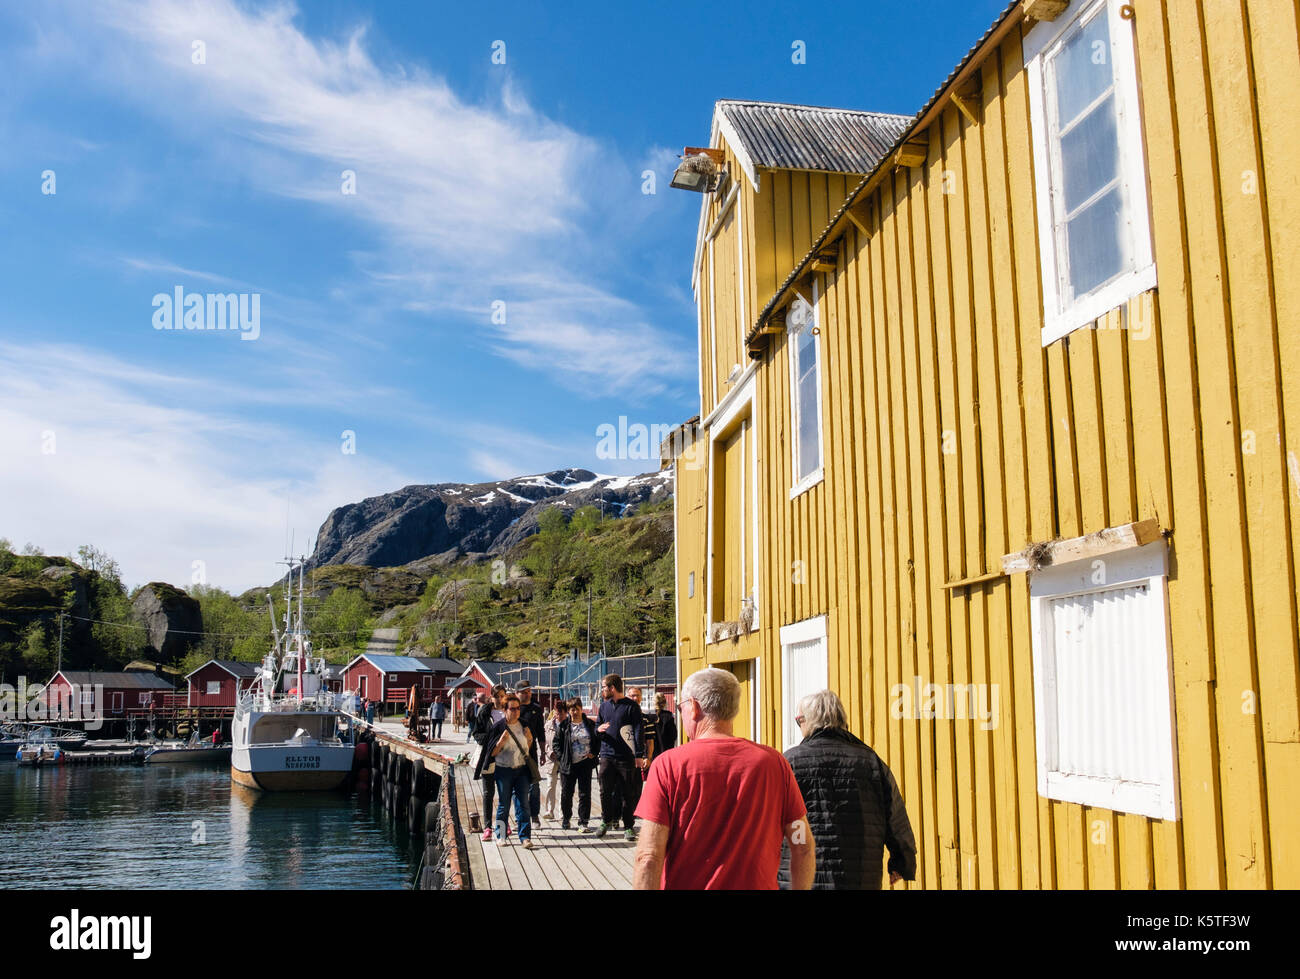 Les touristes visitant village historique Harbour dans l'île de Nusfjord, Flakstadøya, îles Lofoten, Nordland, Norvège, Scandinavie Banque D'Images